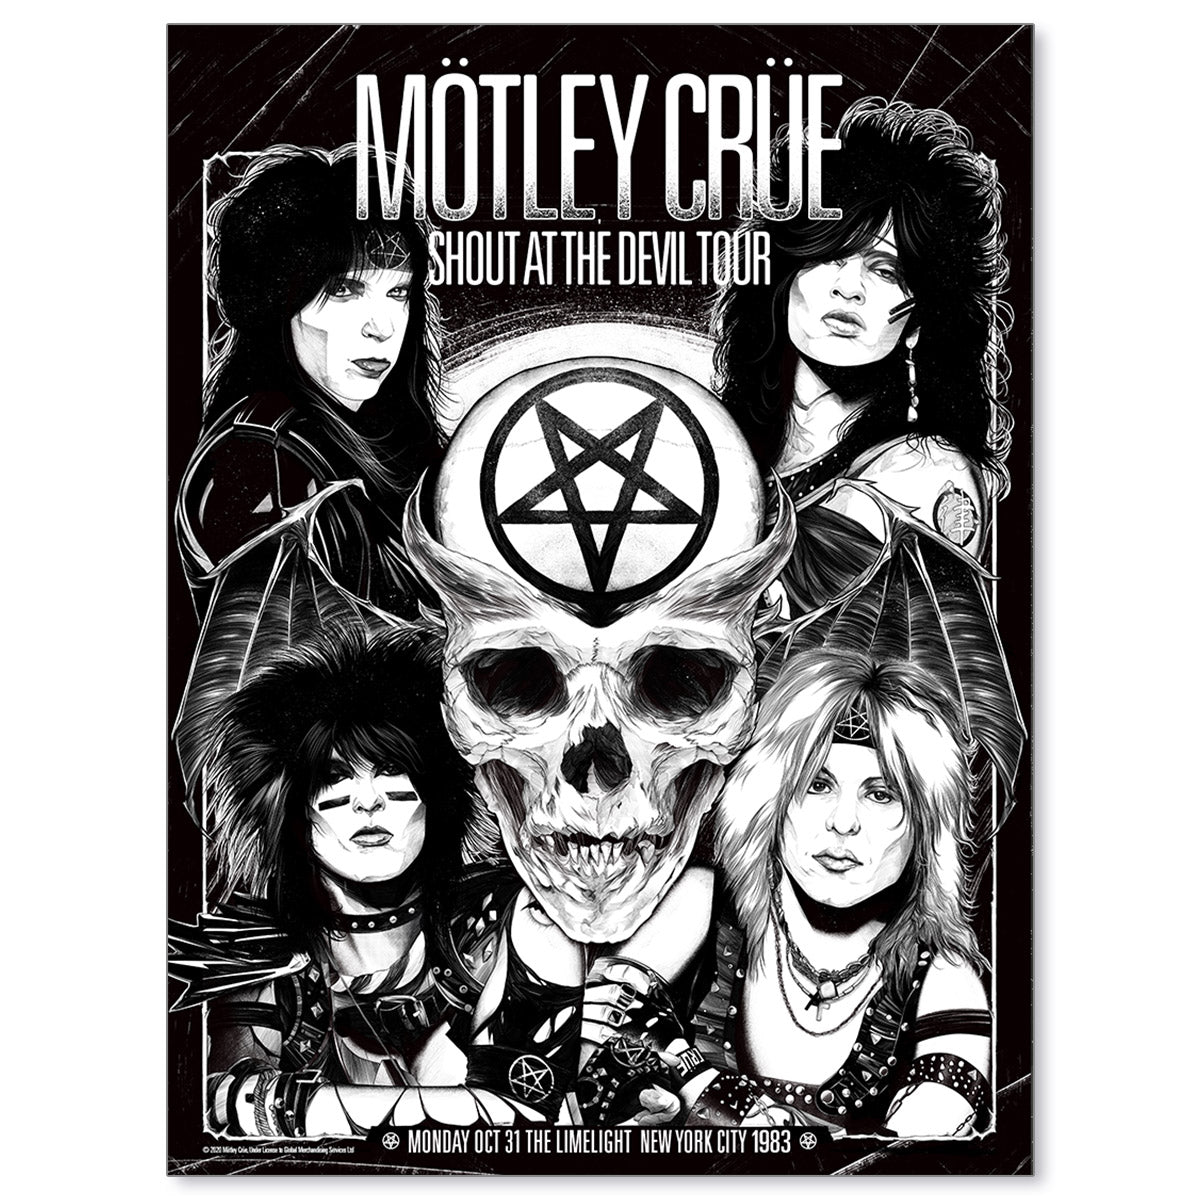 Mötley Crüe New York City 1983 (Main Edition)